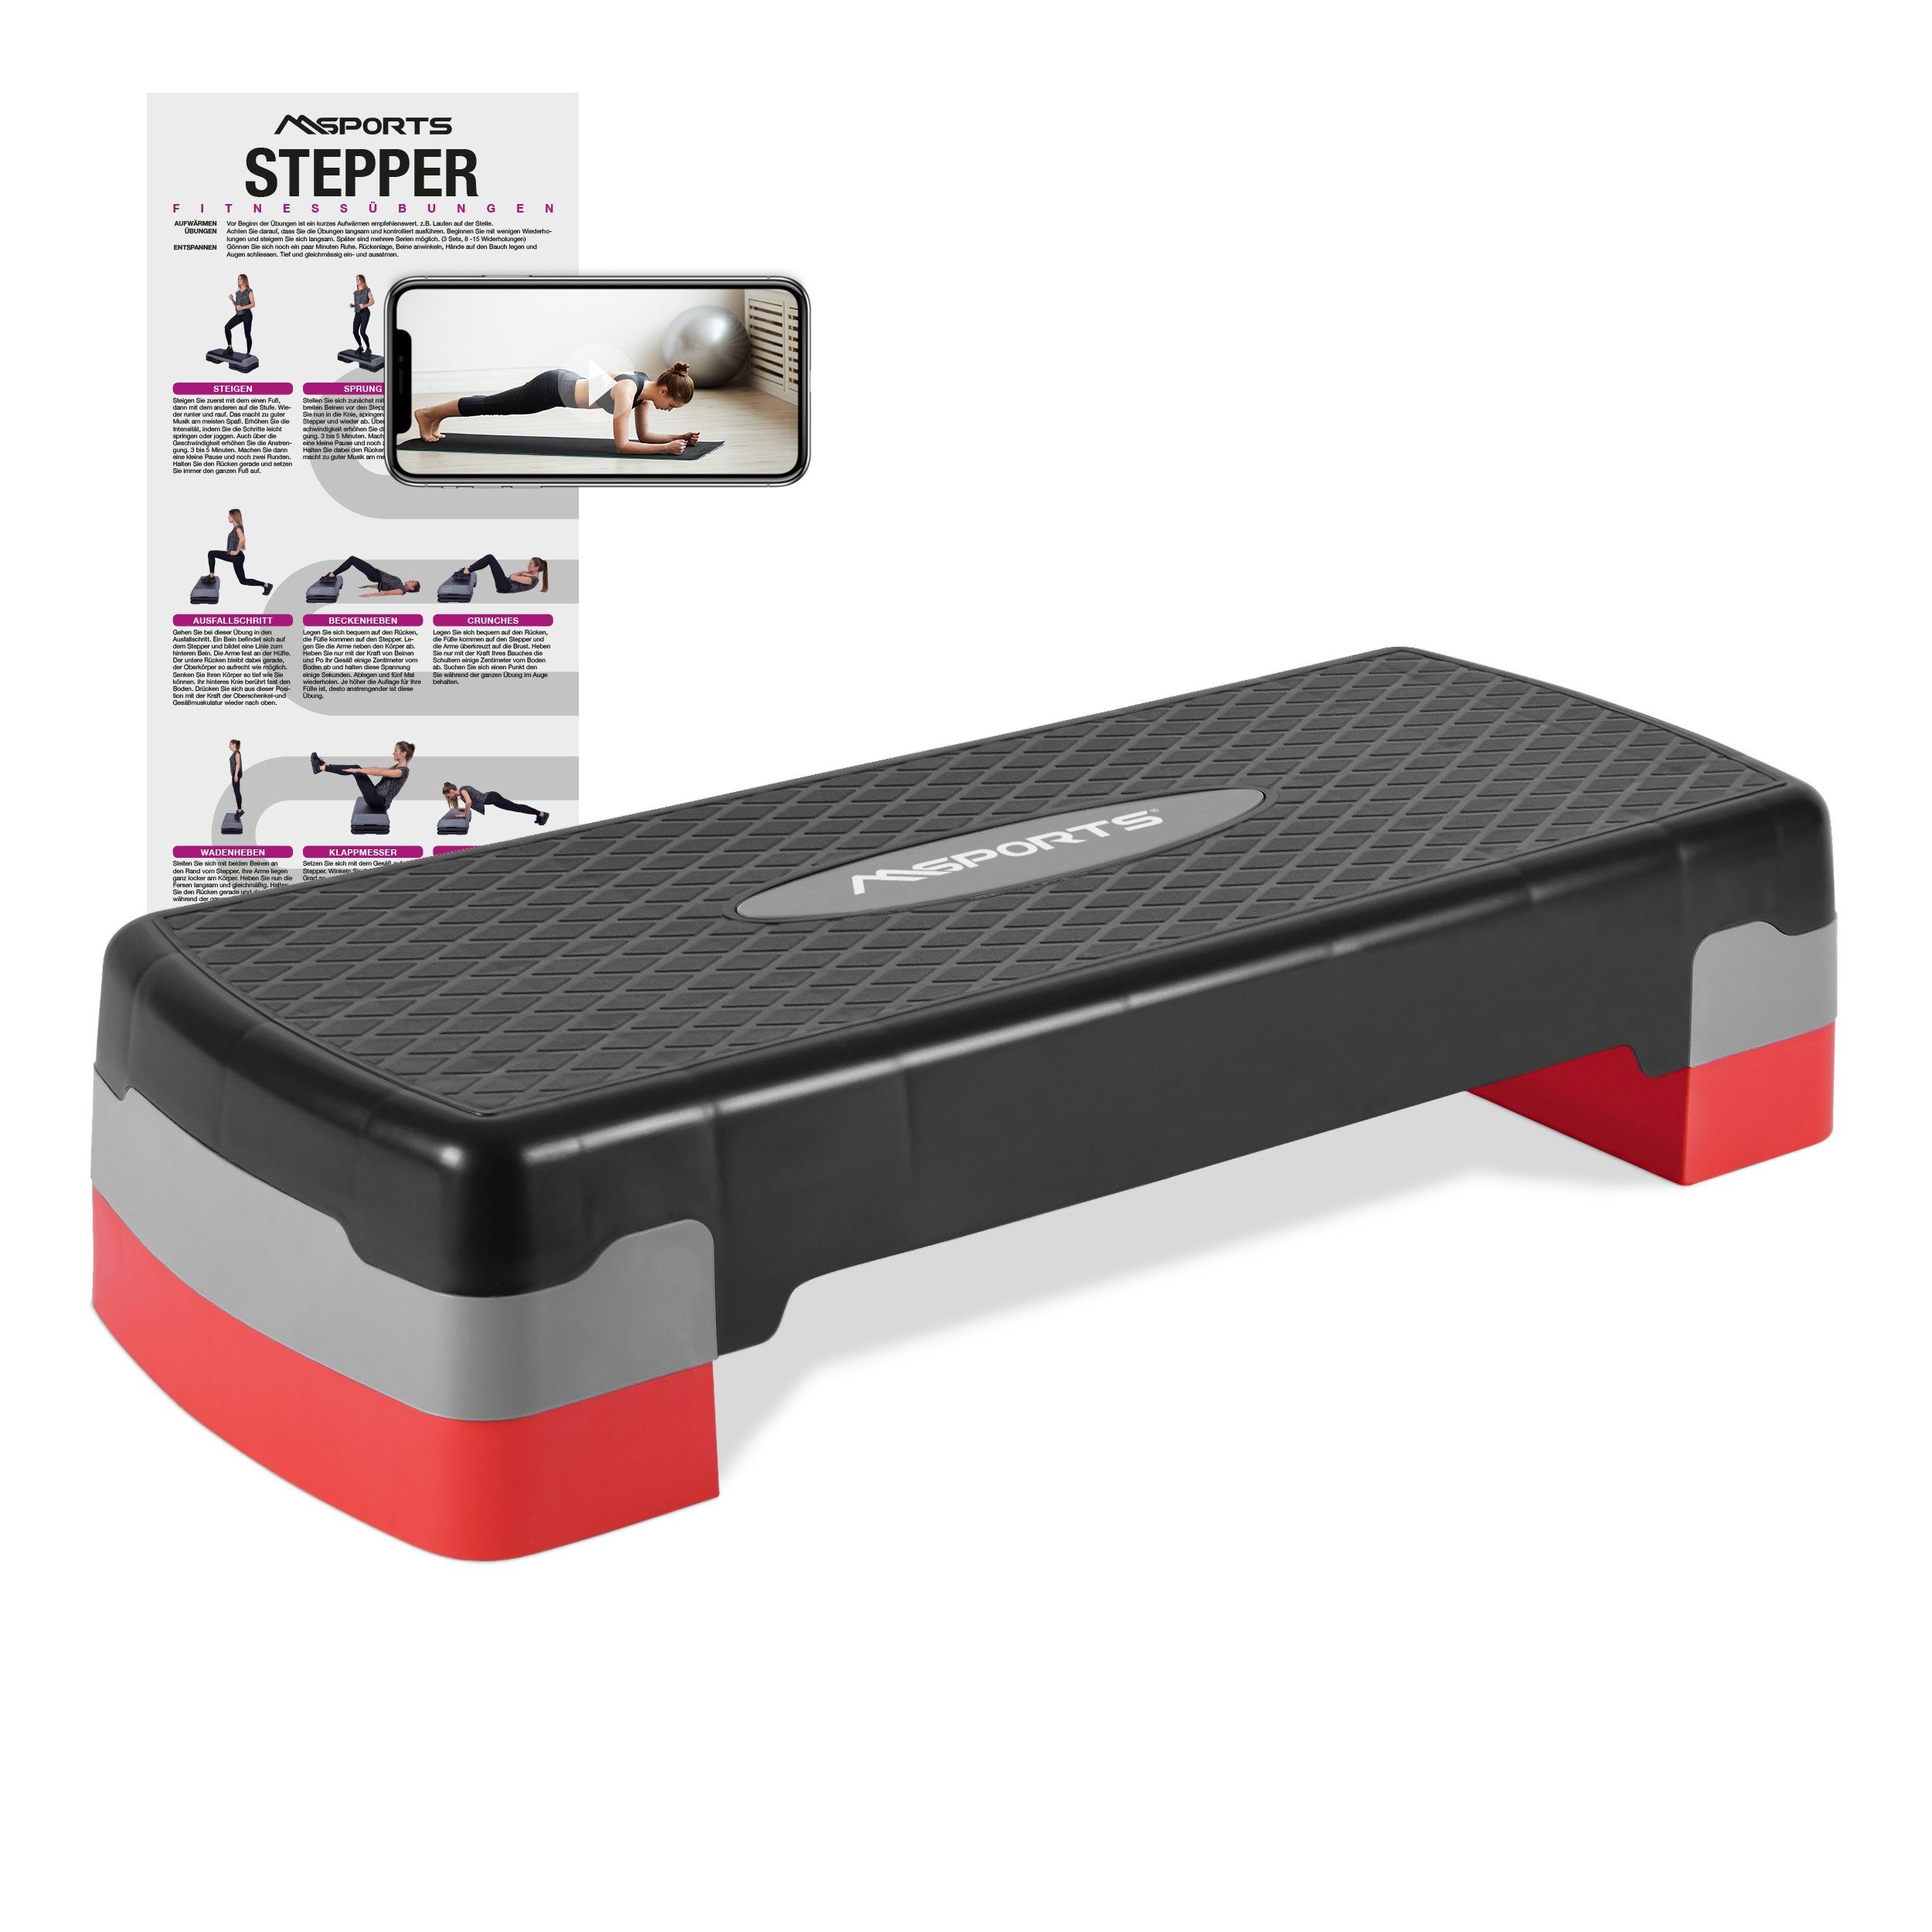 MSports® Stepper Steppbrett Home inkl. Übungsposter 2 - Fach höhenverstellbar schwarz